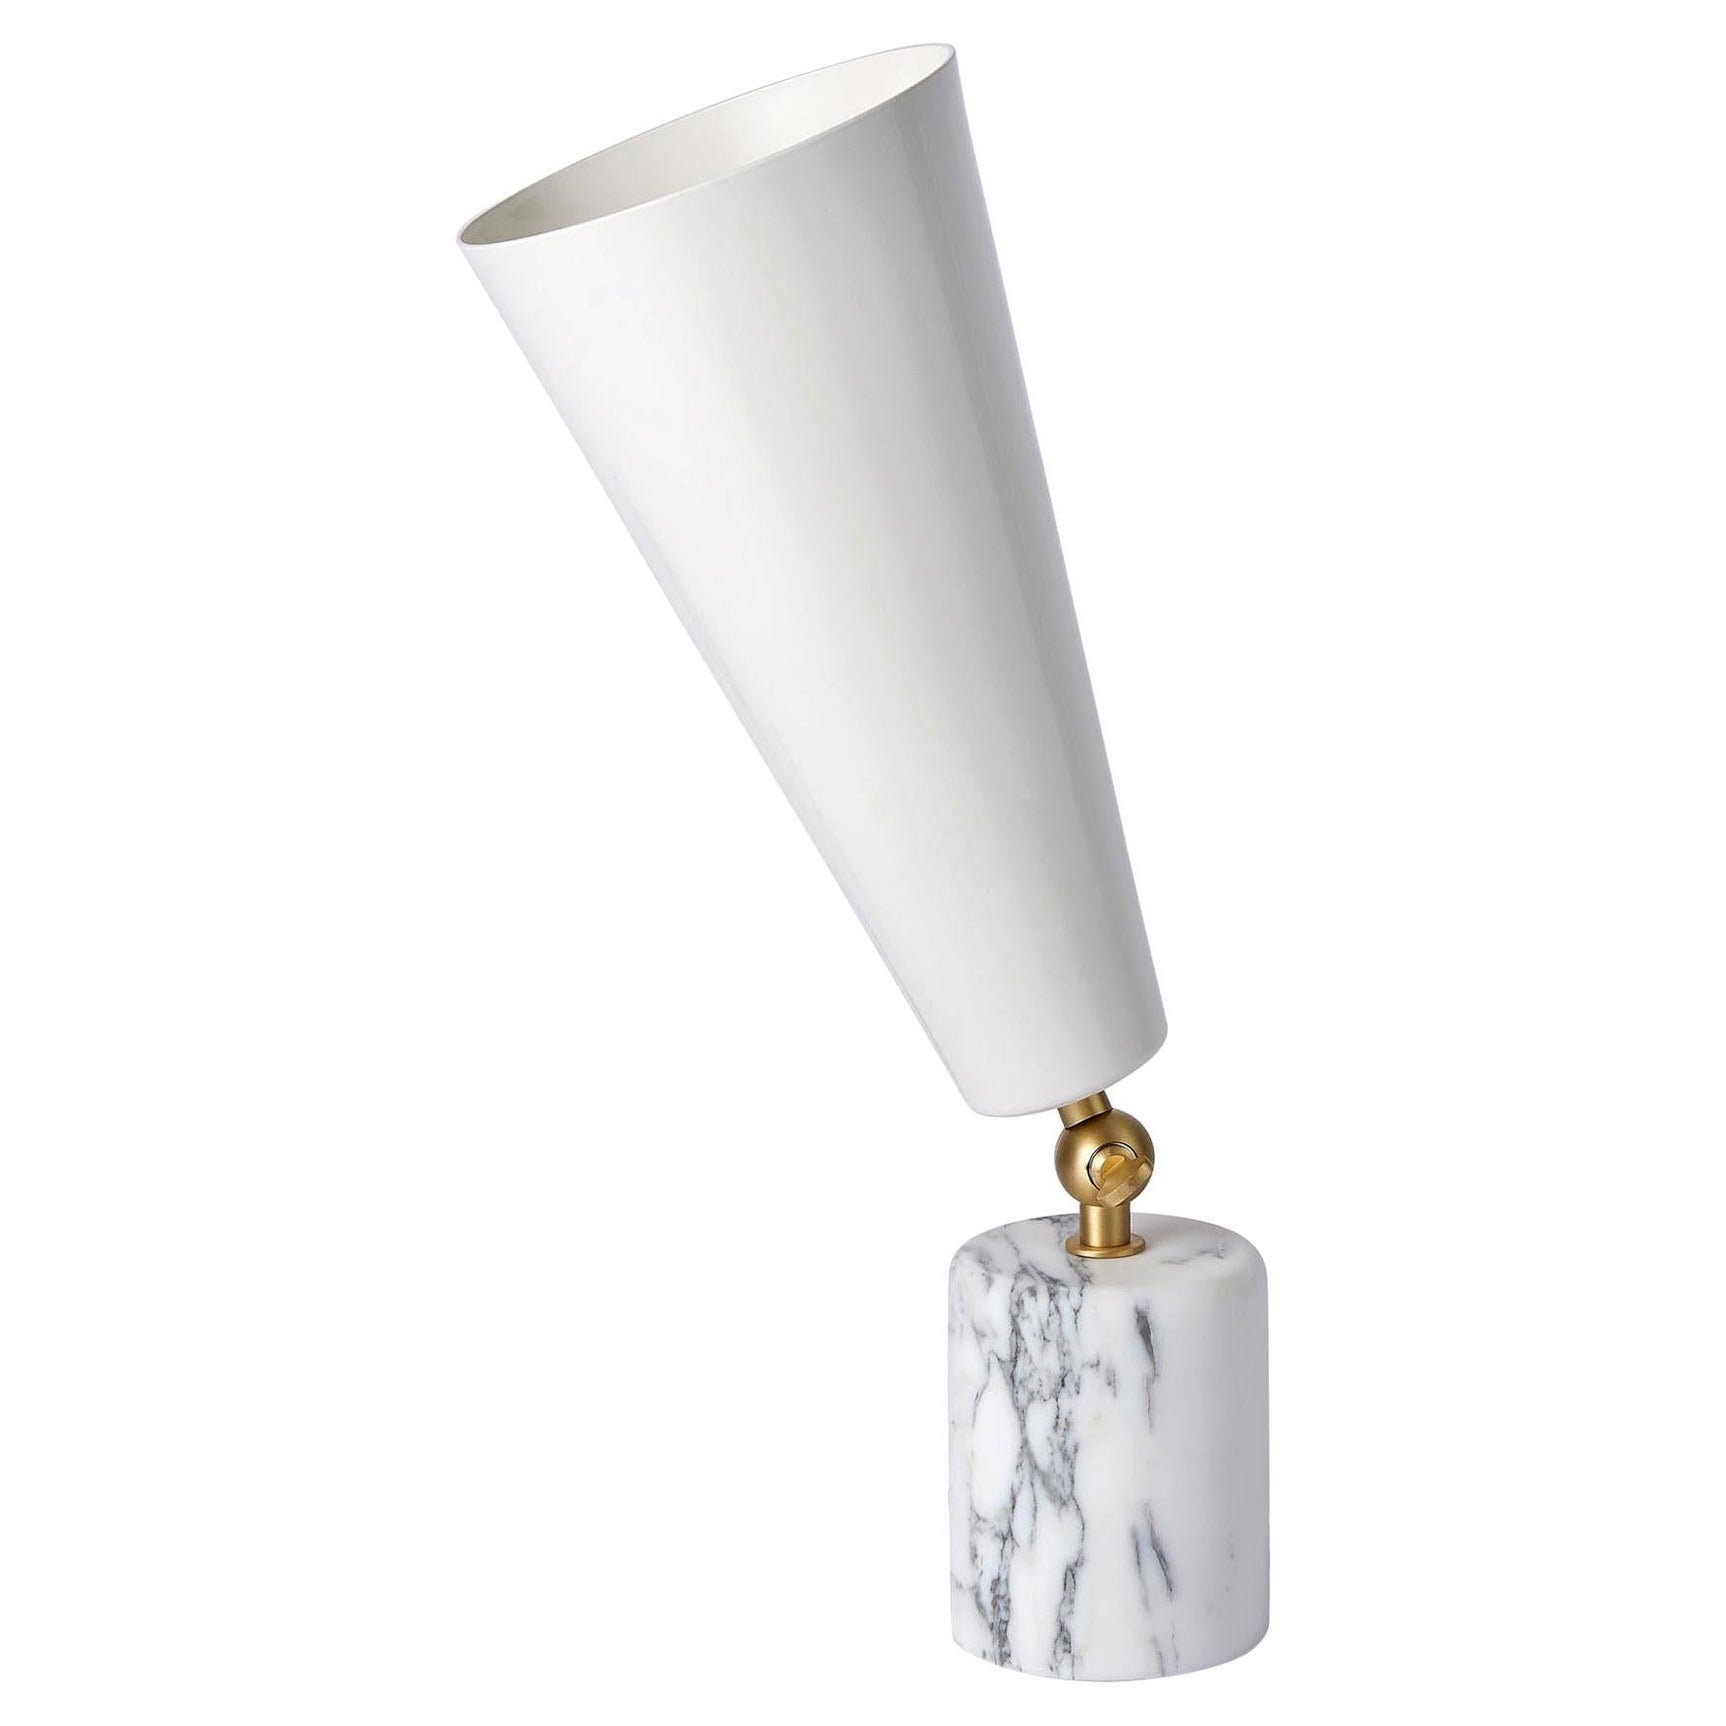 Tato Italia 'Vox' Tischlampe aus weißem Carrara-Marmor, satiniertem Messing und weißem Weiß